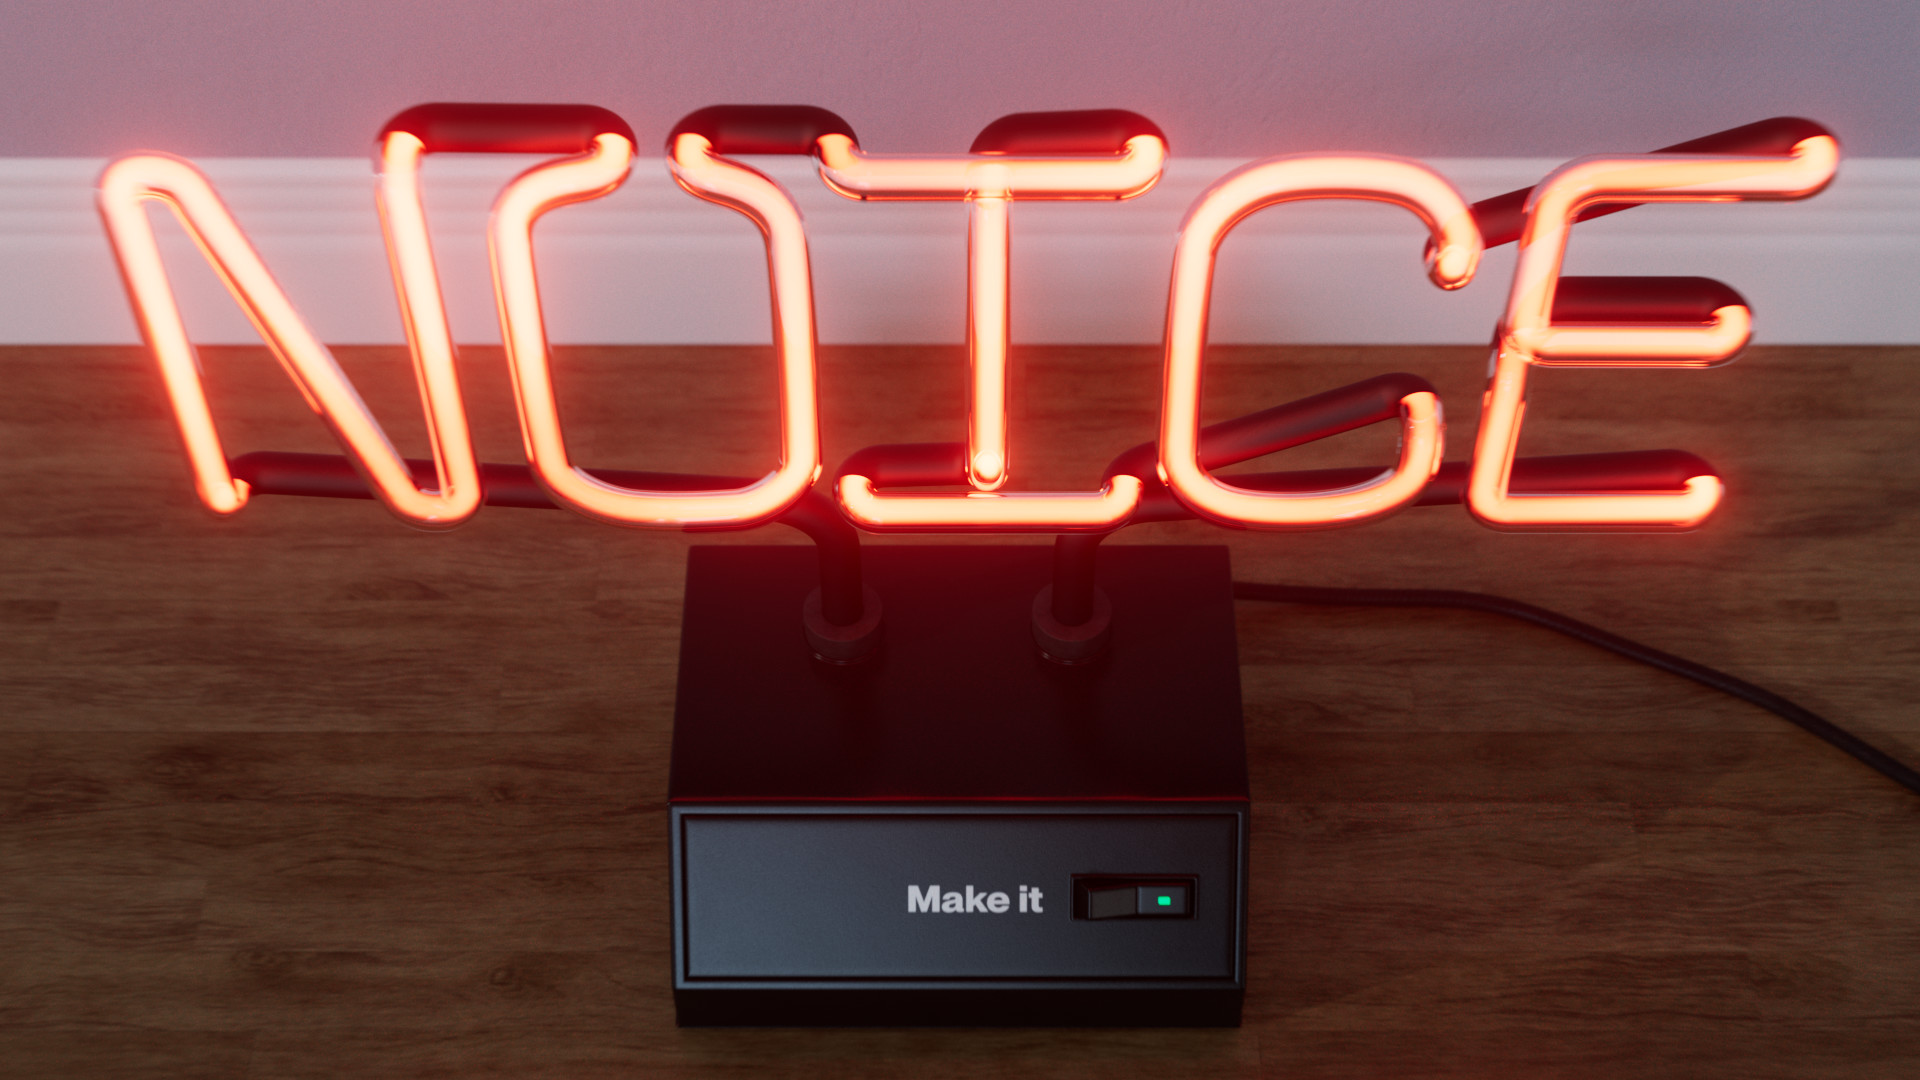 Neon sign 3D work in progress